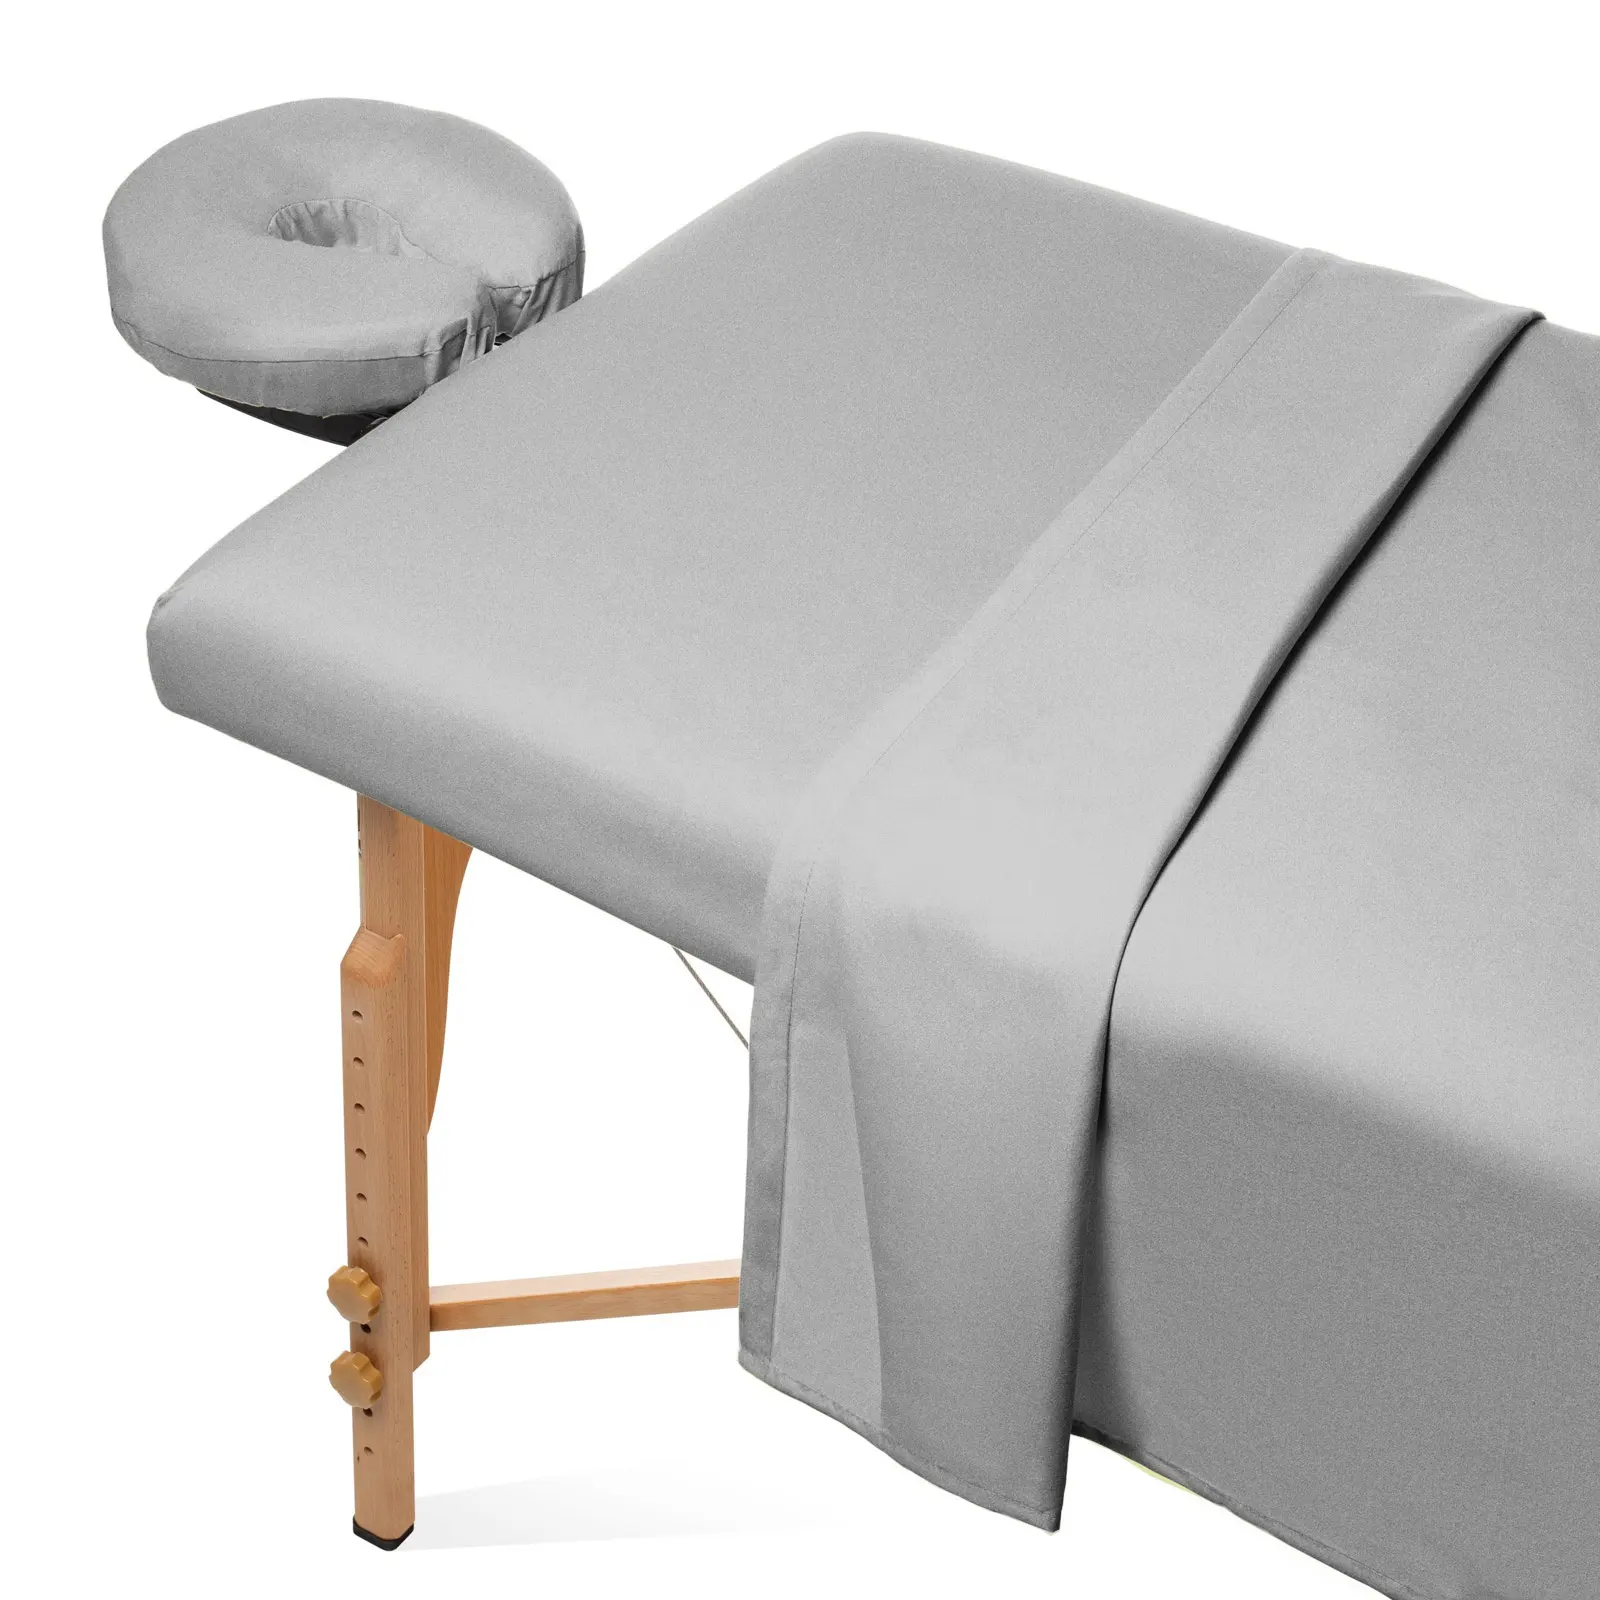 Factory Made New Fashion Günstige Baumwolle Flanell Massage Tischdecke Spann betttuch Set